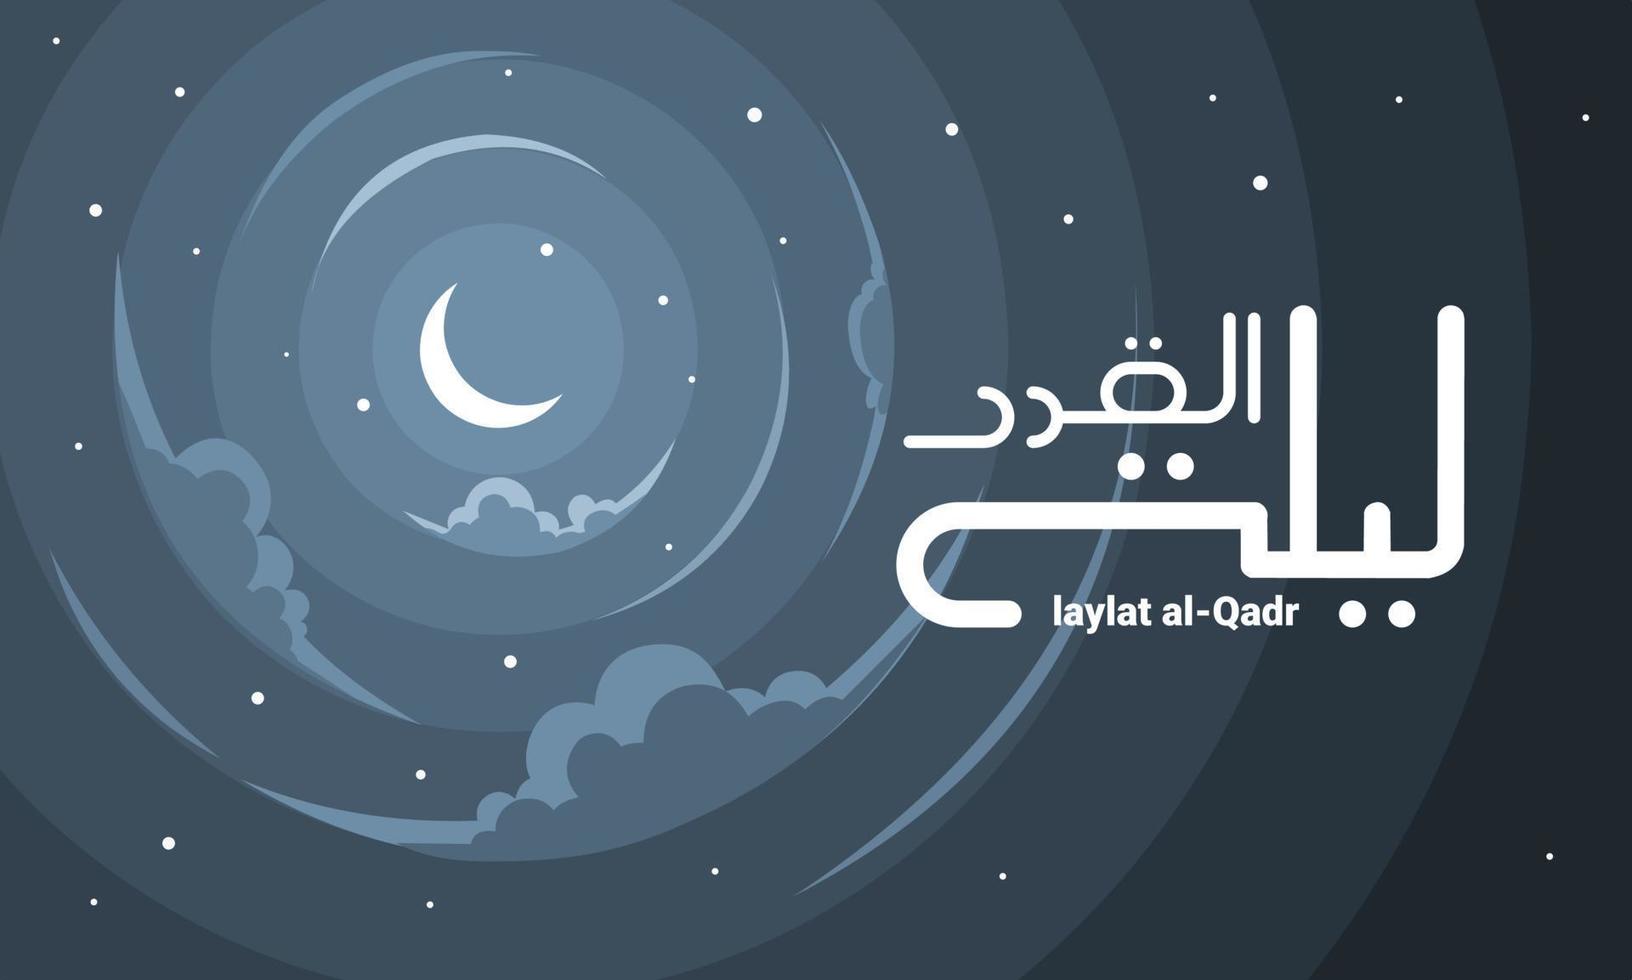 nachtelijke atmosfeer met maansikkel, wolken, platte sterren, vertaling van de Arabische tekst laylat al-qadr wat nacht van vastberadenheid of kracht betekent. vector illustratie